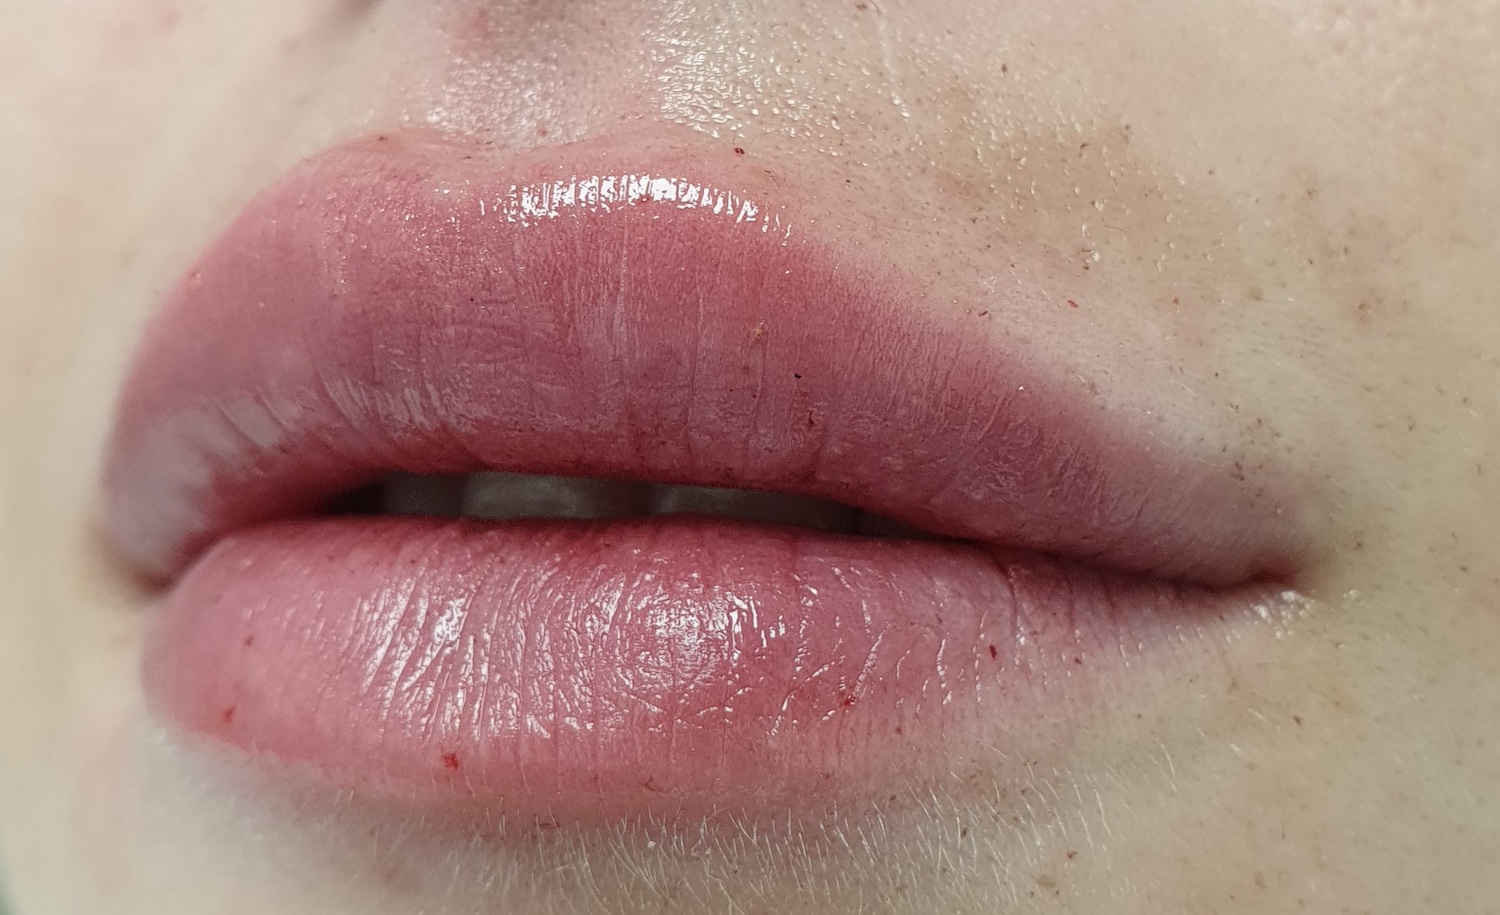 Pacijent br.2: Aplikovanje hijaluronskih filera u usne